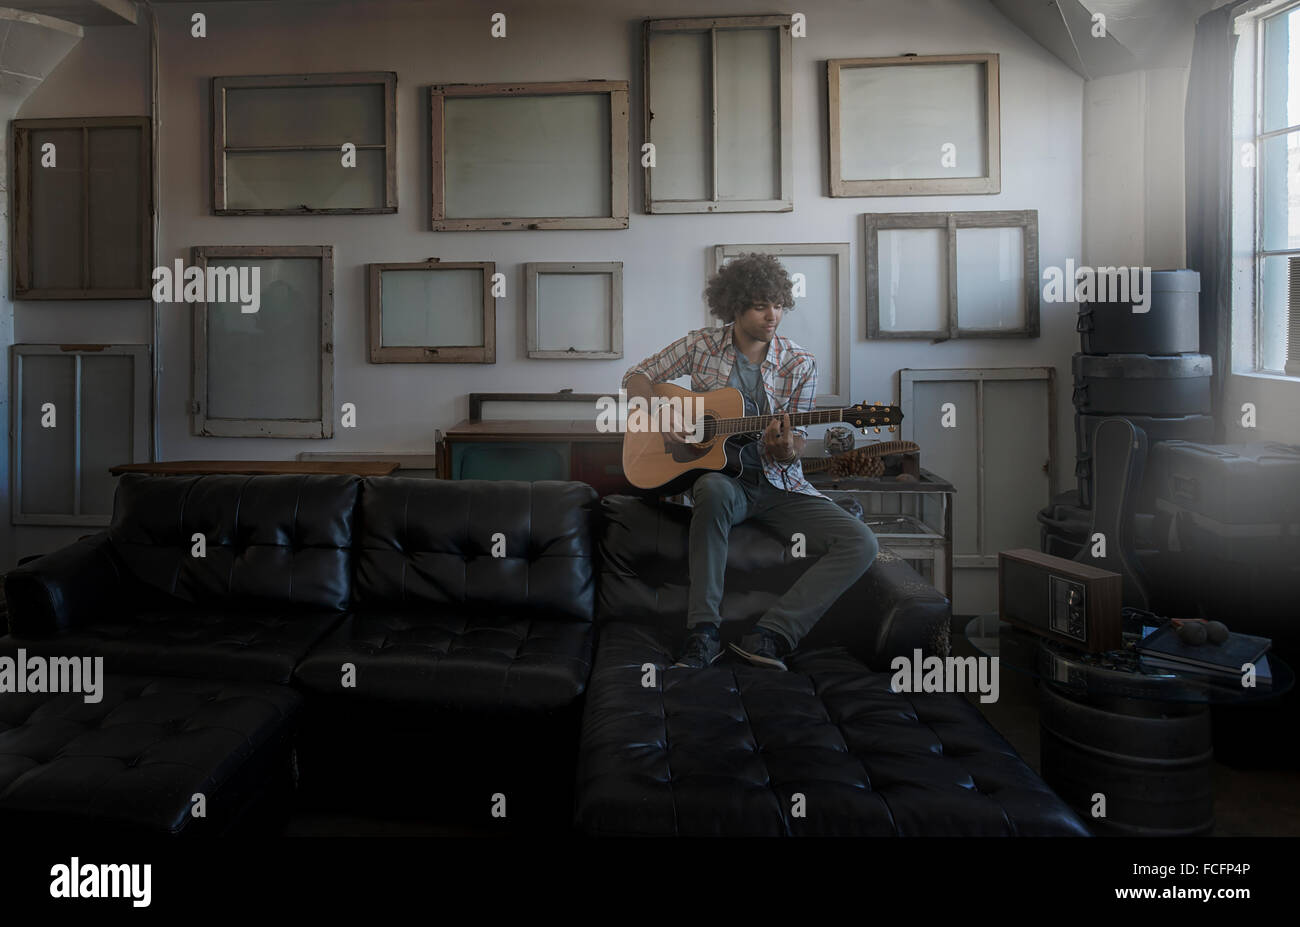 Loft-Dekor. Eine Wand gehangen mit Bilder in Rahmen, umgekehrt, um den Rücken zu zeigen. Ein Mann, eine Gitarre zu spielen. Stockfoto